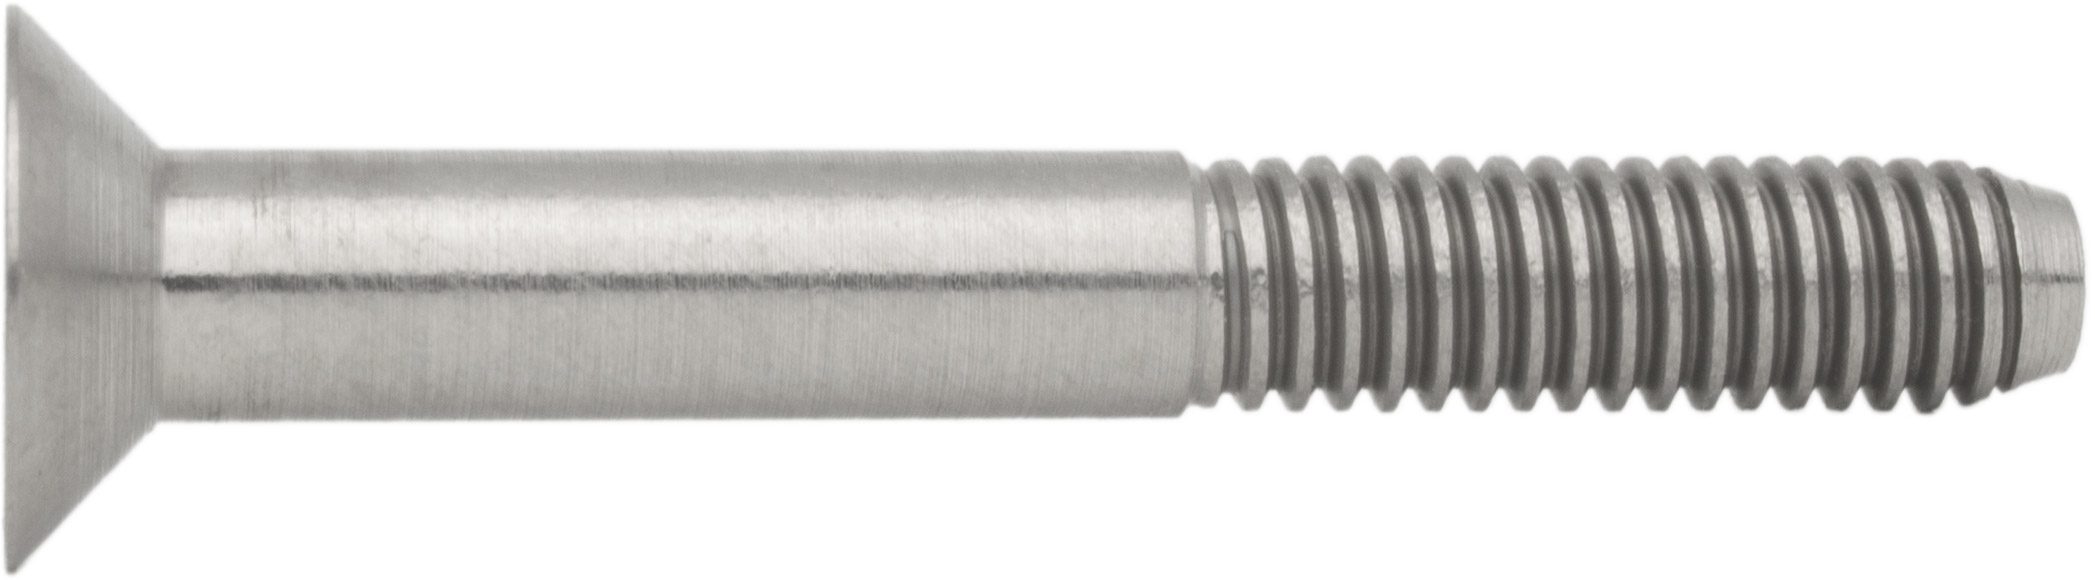 Ultraleichte Kohlefaser-Schraube M4x16 Senkkopf DIN 7991 Inbus